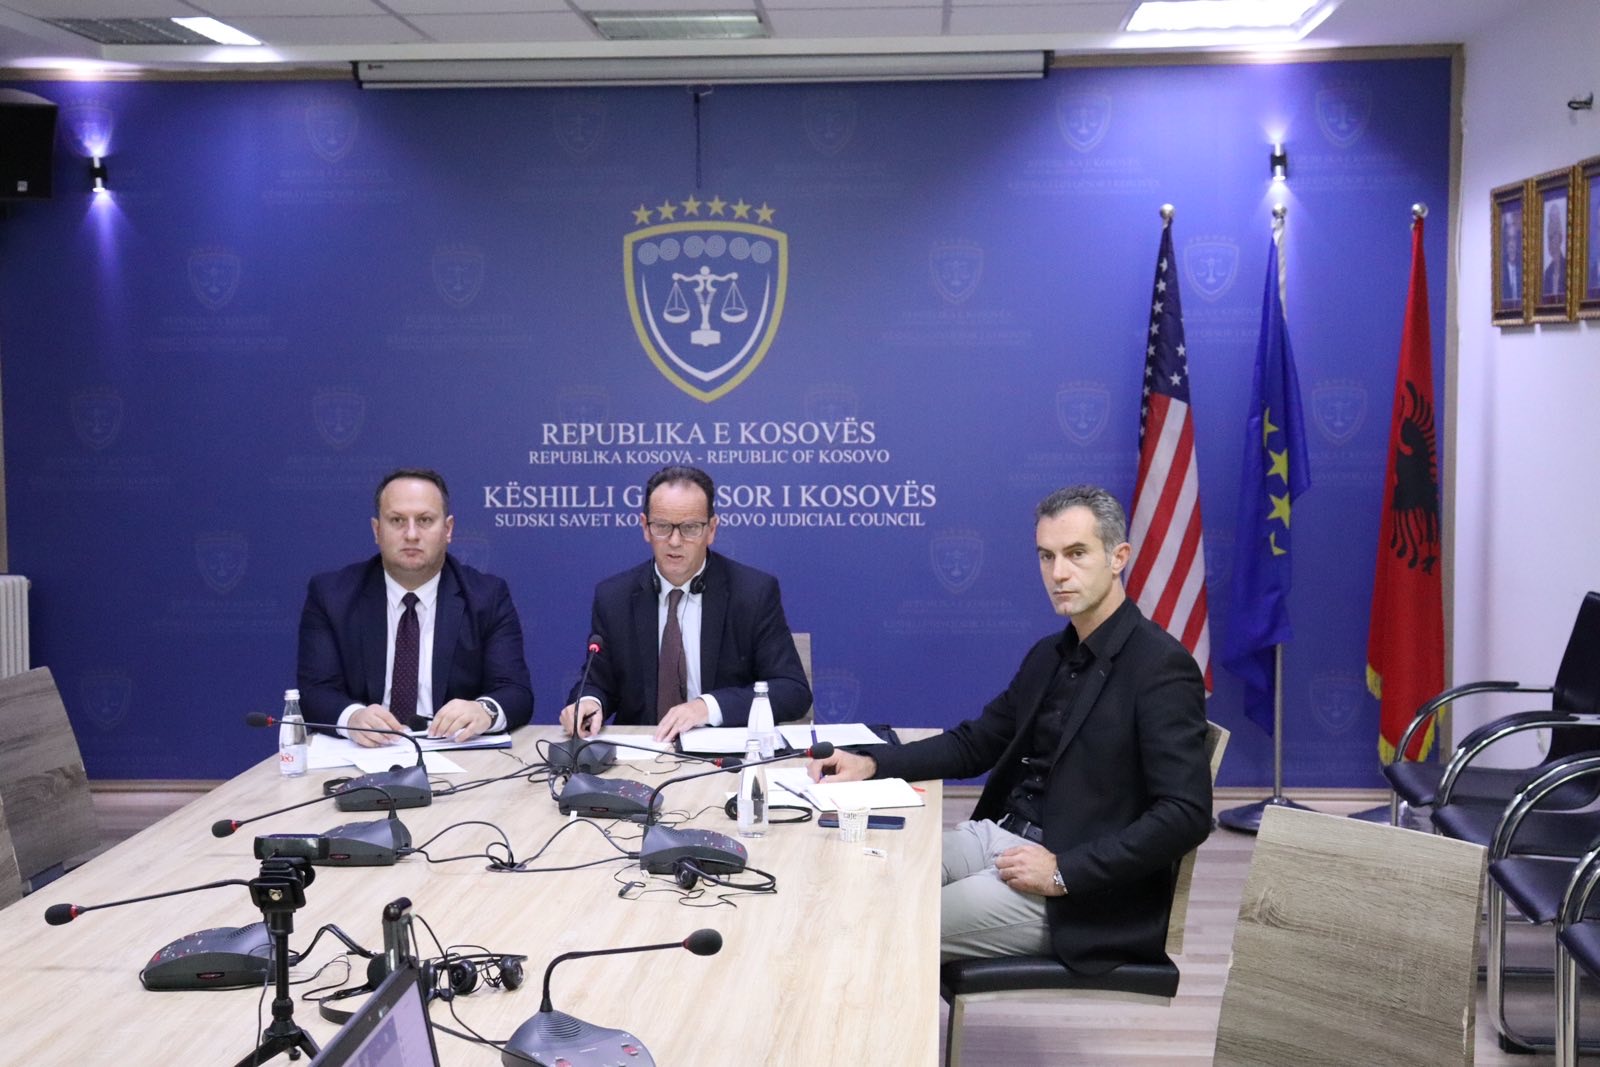 Kryetari Peci dhe Kryesuesi Zogaj diskutojnë rreth zhvillimit të sistemit gjyqësor të Kosovës